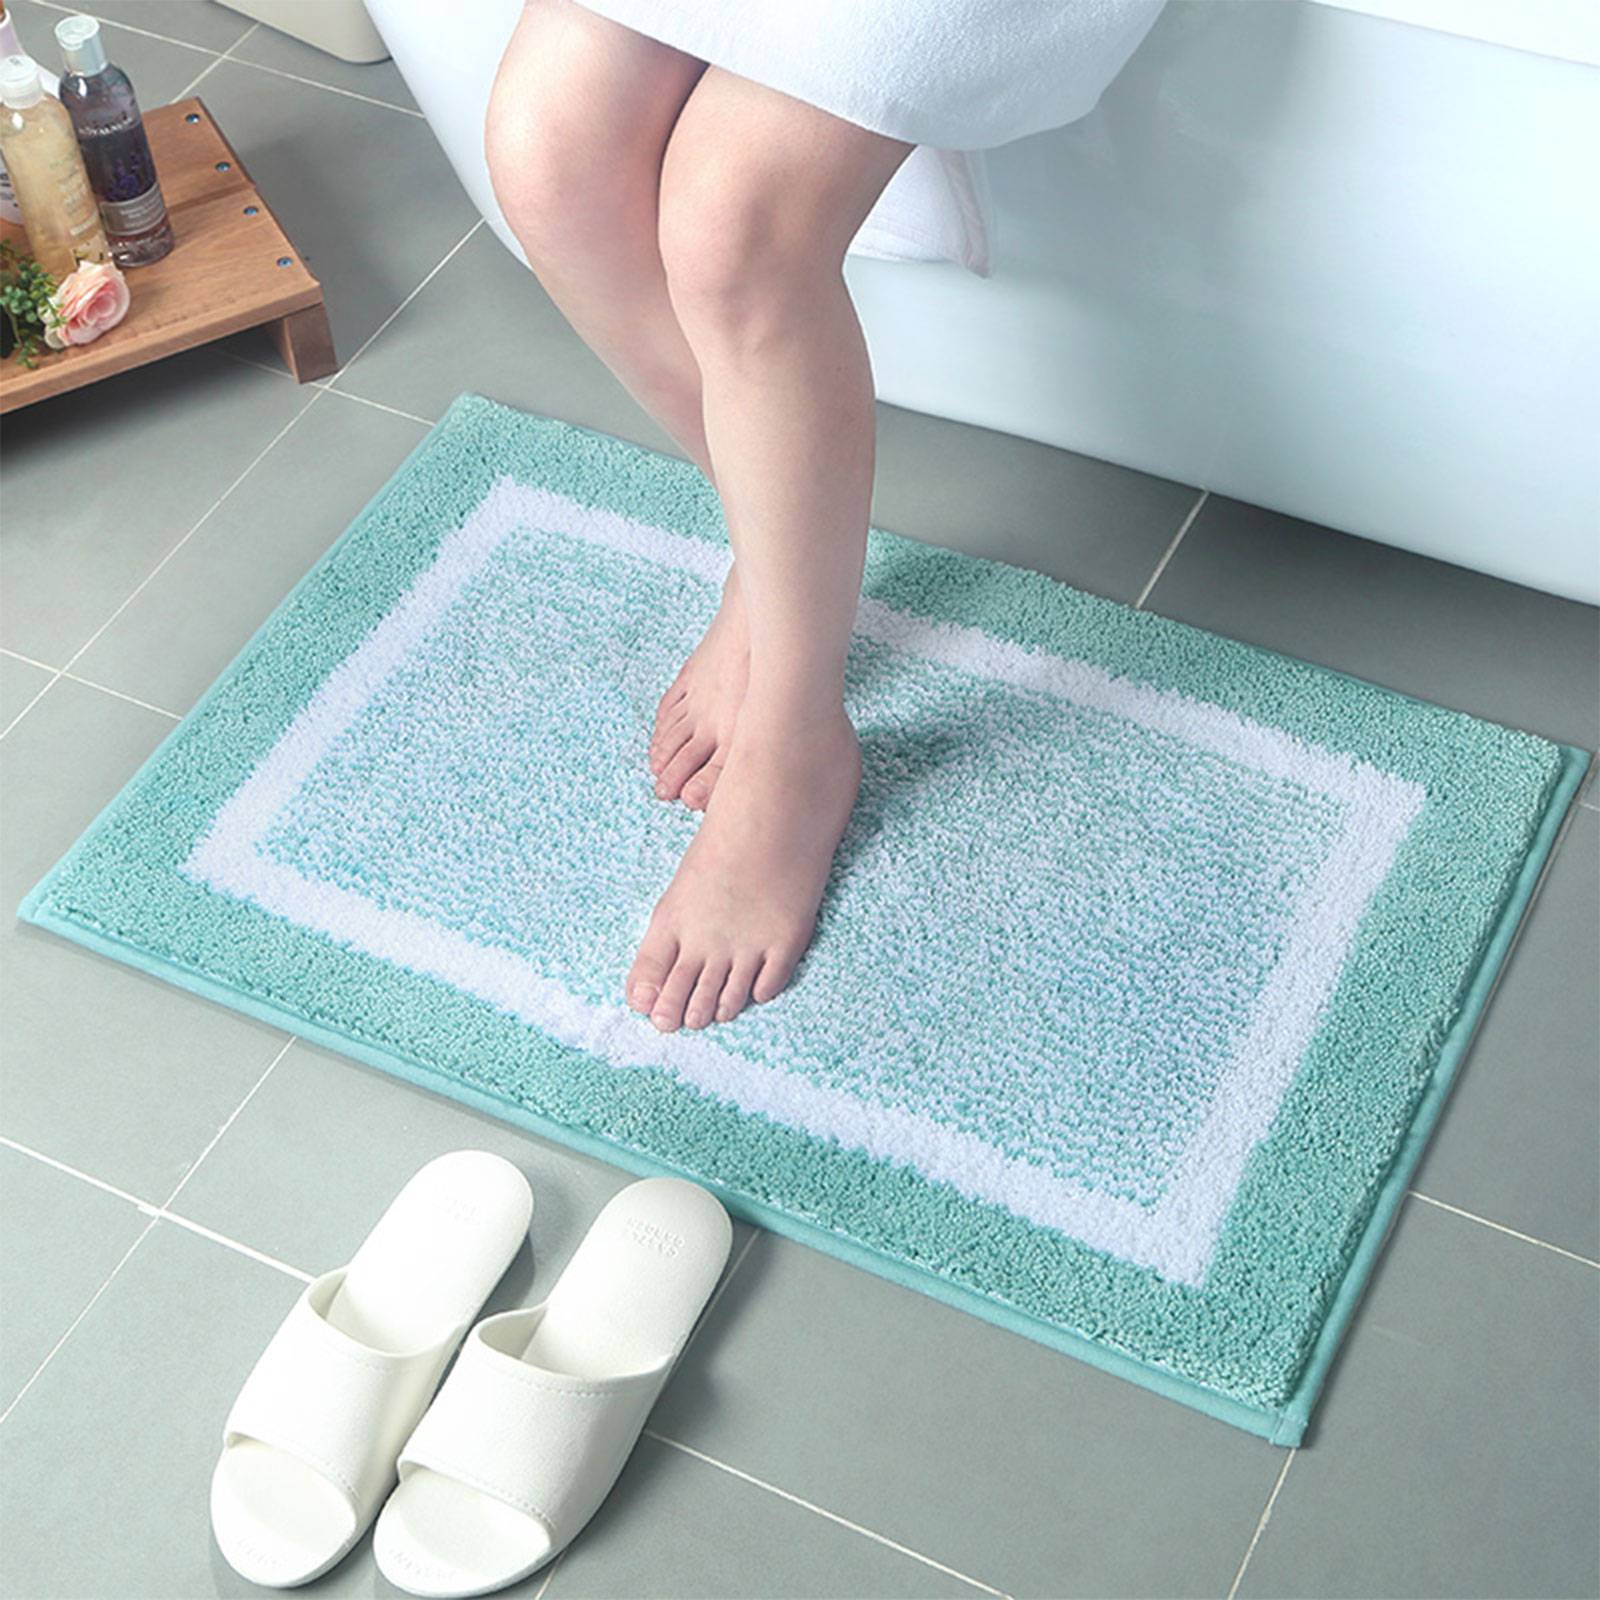 Противоскользящий коврик в ванну: плюсы и минусы